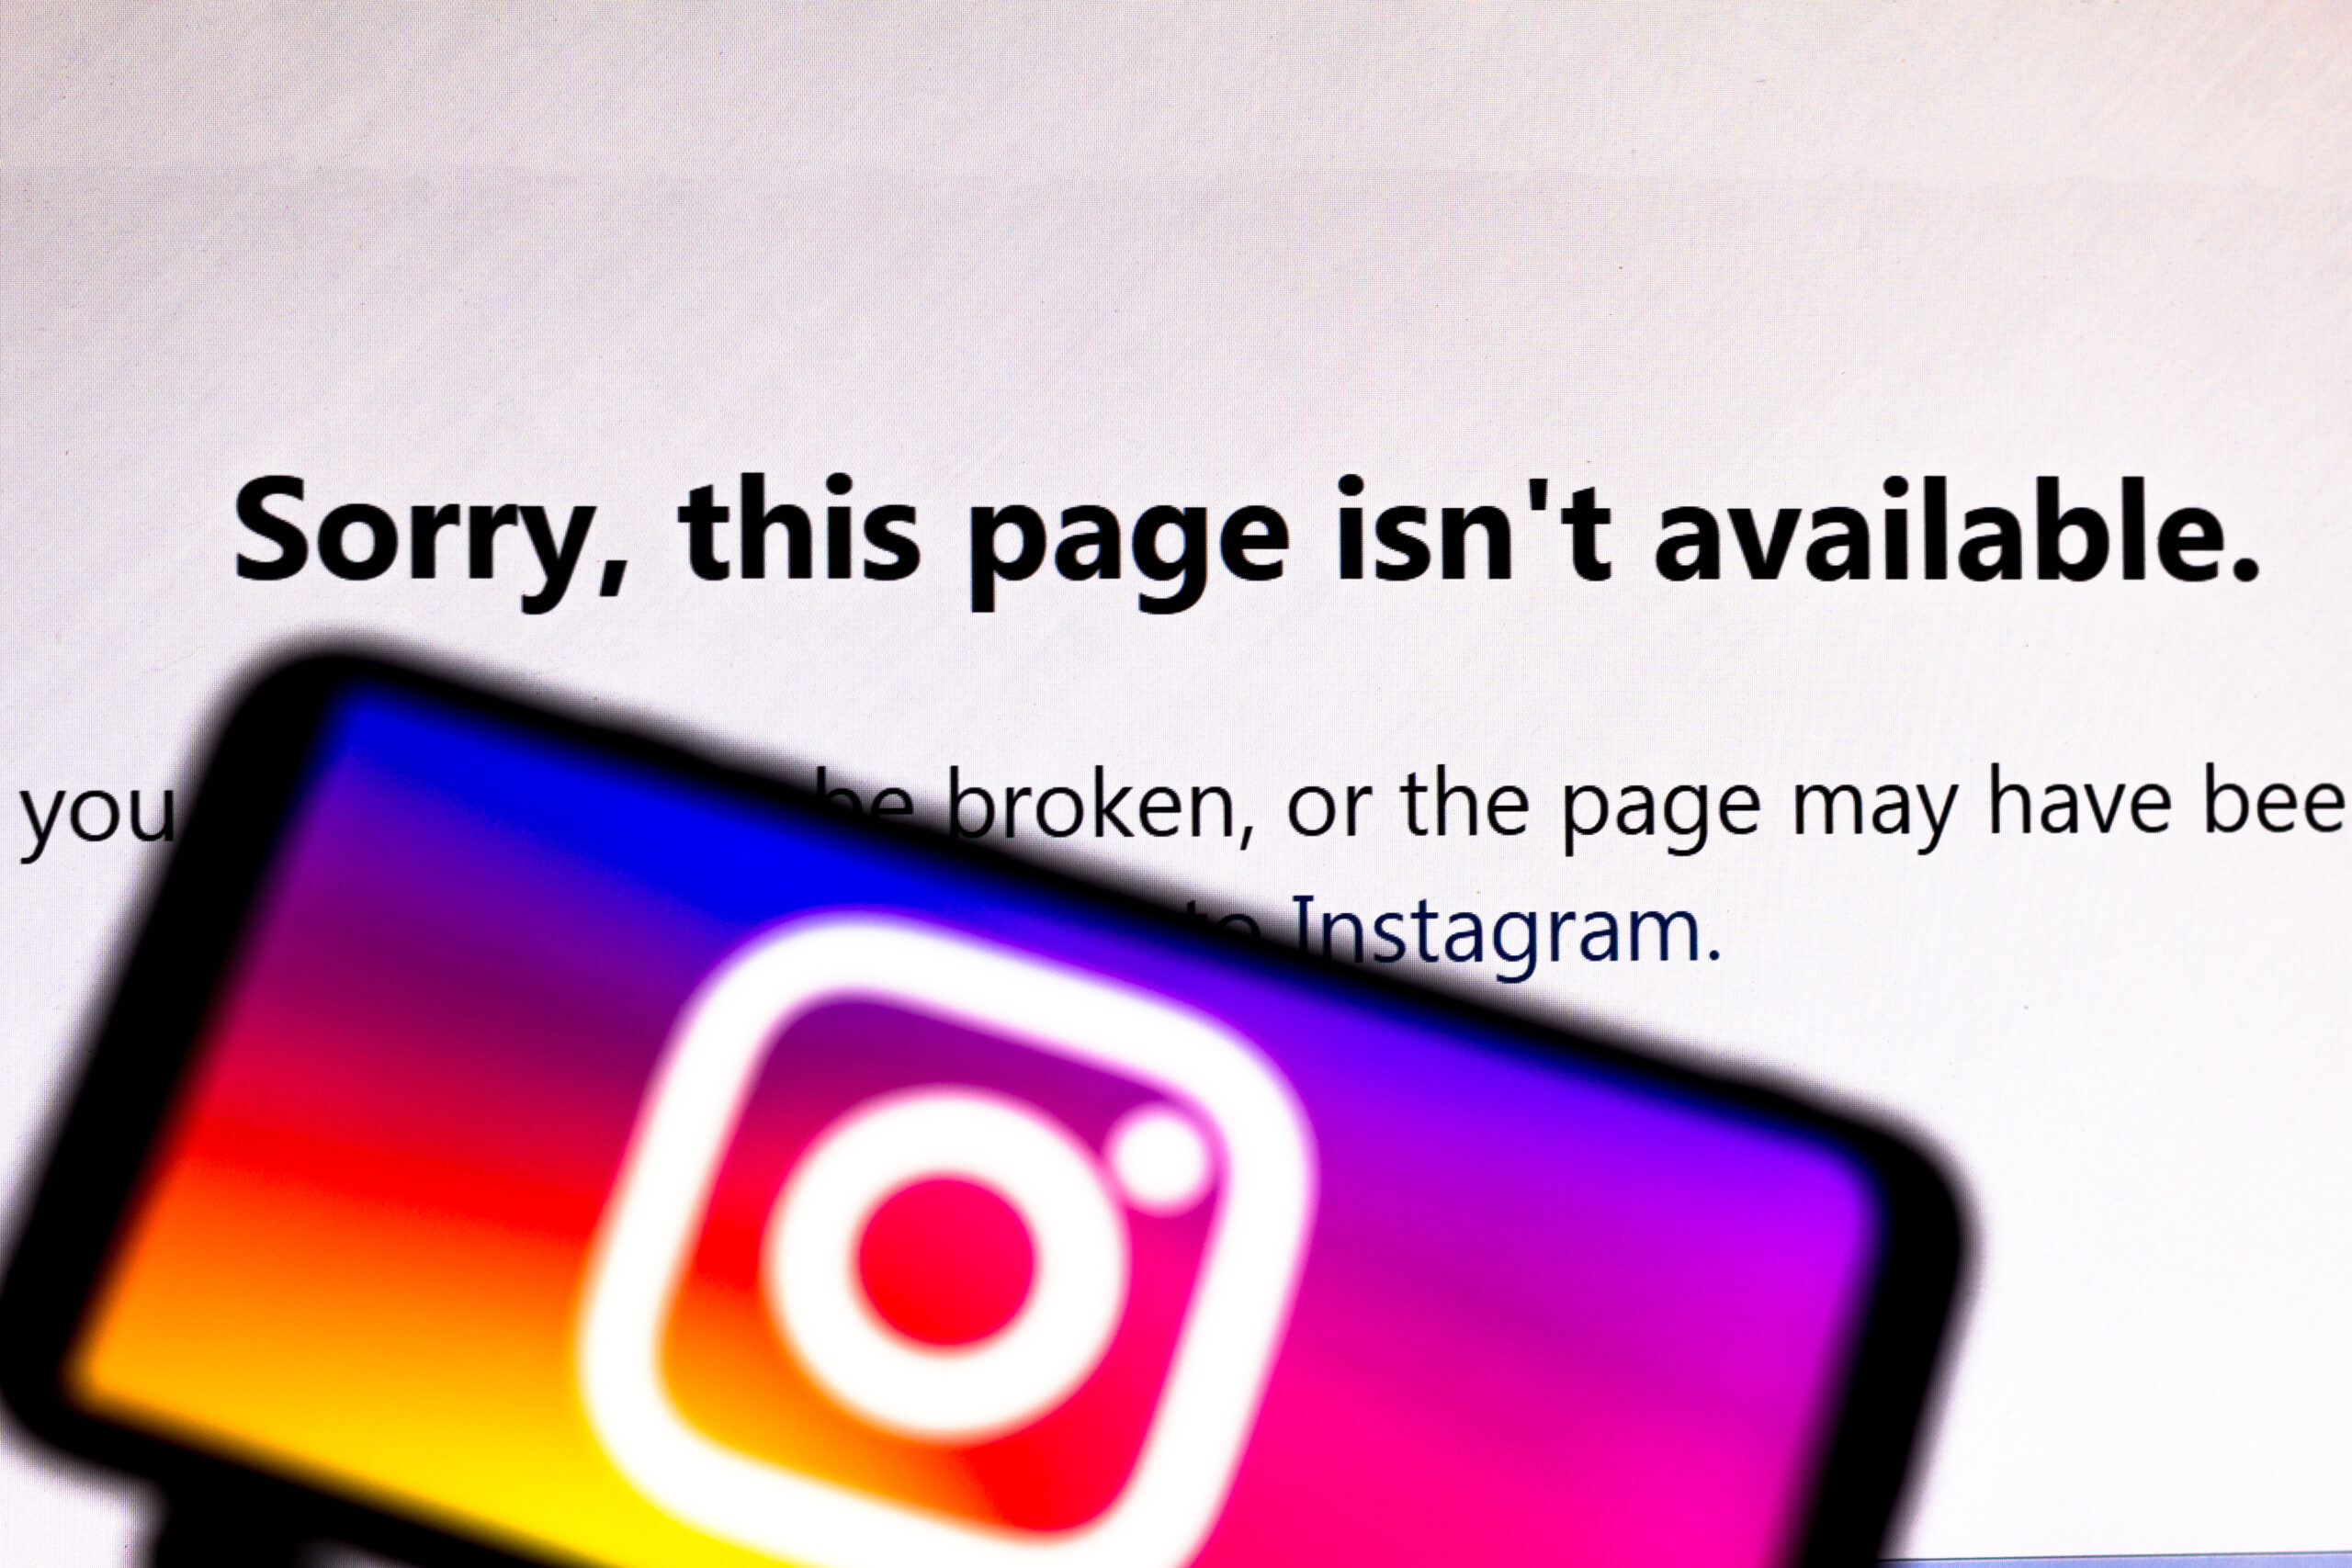 Tire suas dúvidas sobre um possível bloqueio no Instagram